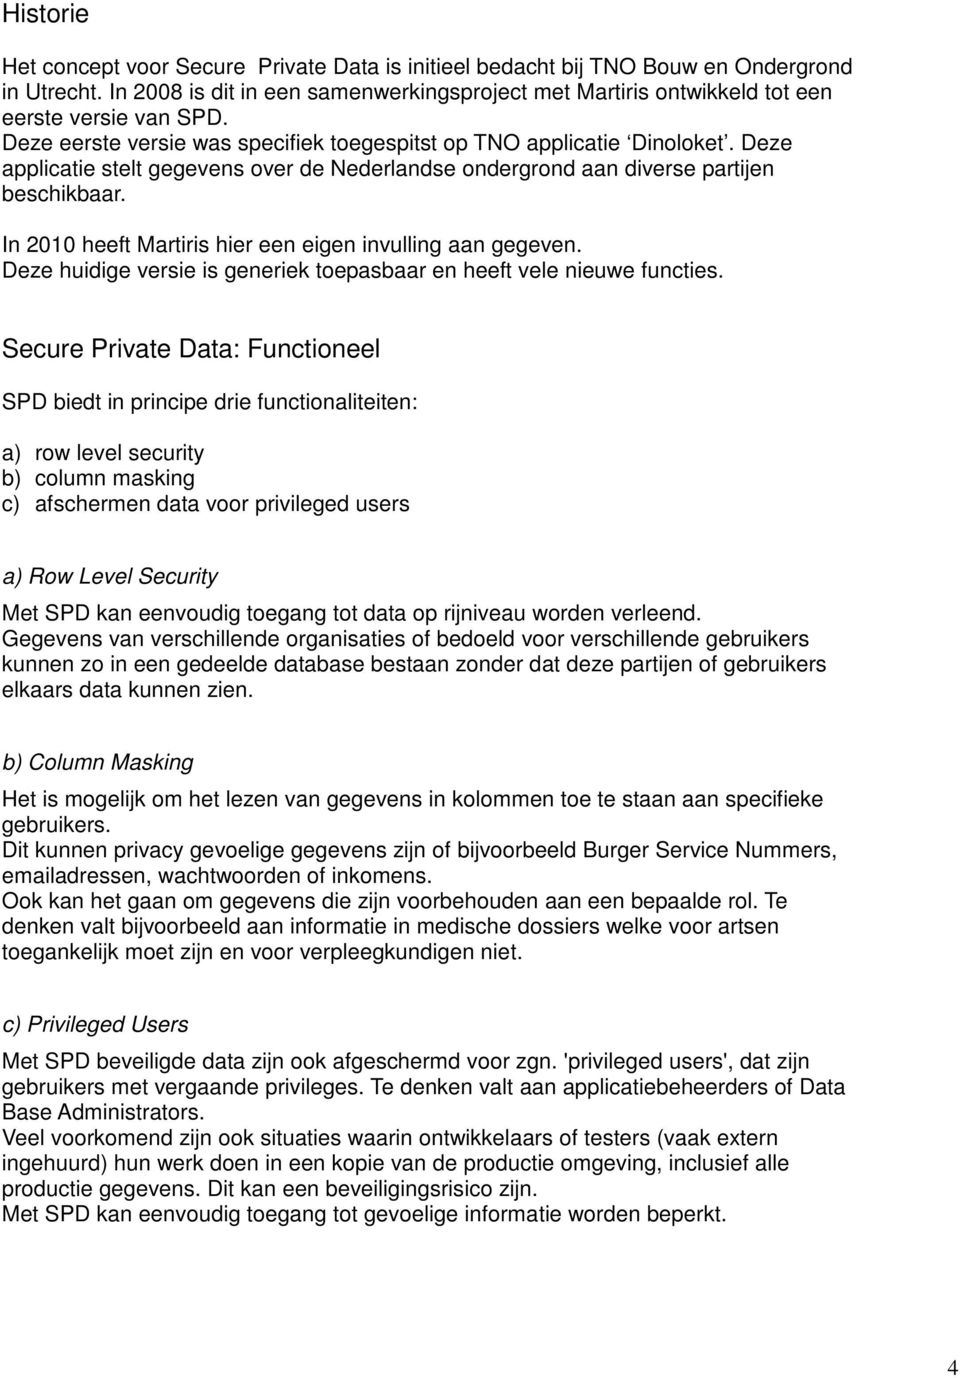 Deze applicatie stelt gegevens over de Nederlandse ondergrond aan diverse partijen beschikbaar. In 2010 heeft Martiris hier een eigen invulling aan gegeven.